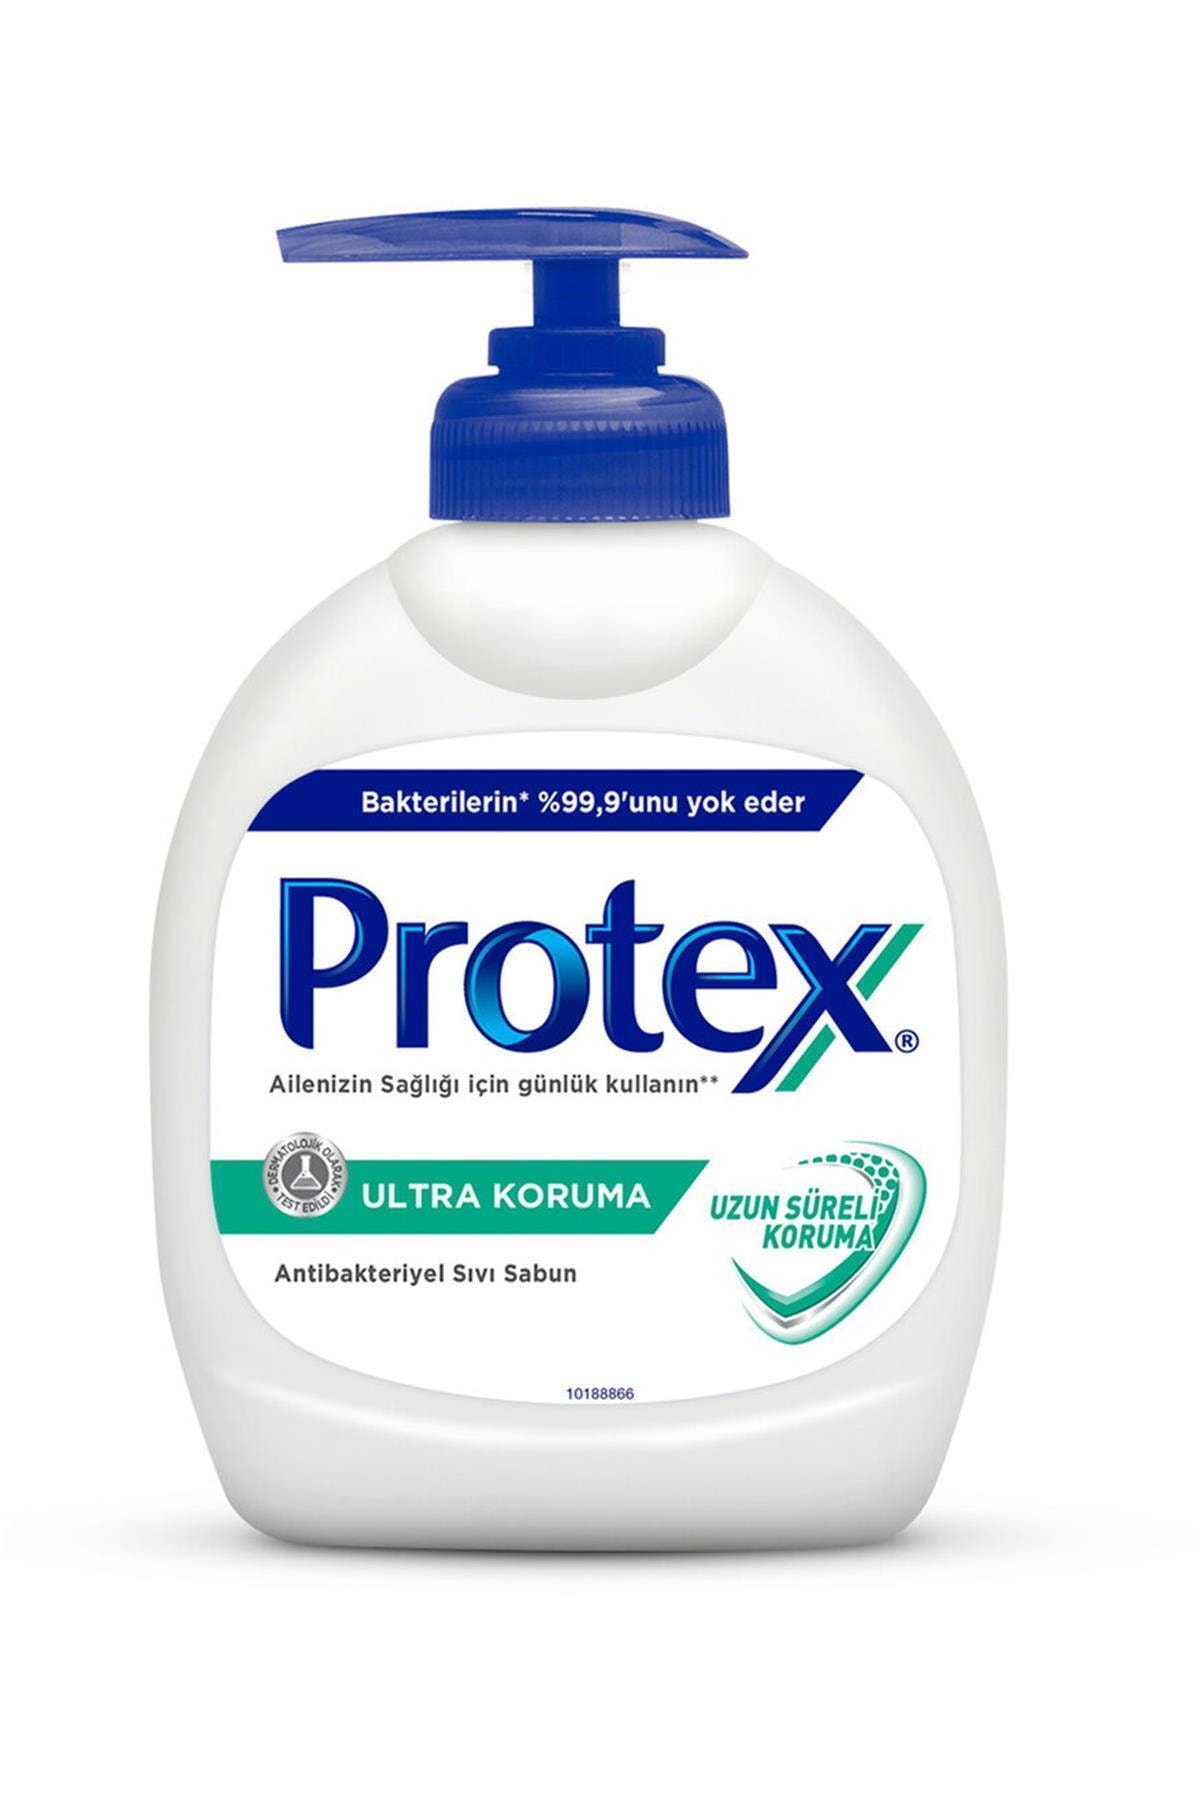 Protex Ultra Koruma Antibakteriyel Sıvı Sabun 300 ml